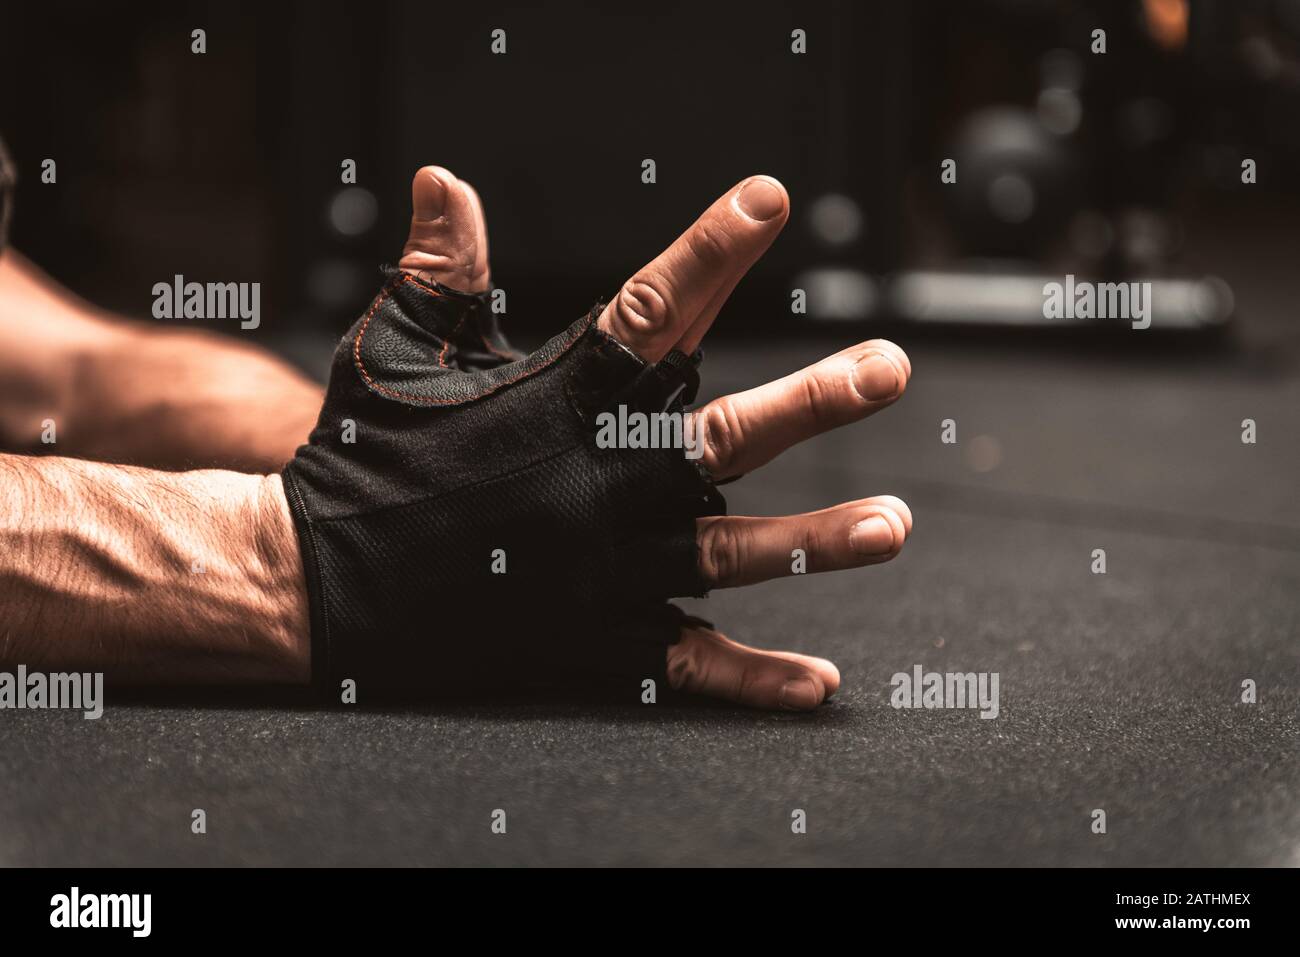 Die Hände im Vordergrund eines Mannes. Hände mit schwarzen fingerlosen Handschuhen für den sportlichen Einsatz. Nahaufnahme der Hände des Mannes in schwarzen Handschuhen ohne Finger in einem Nam Stockfoto